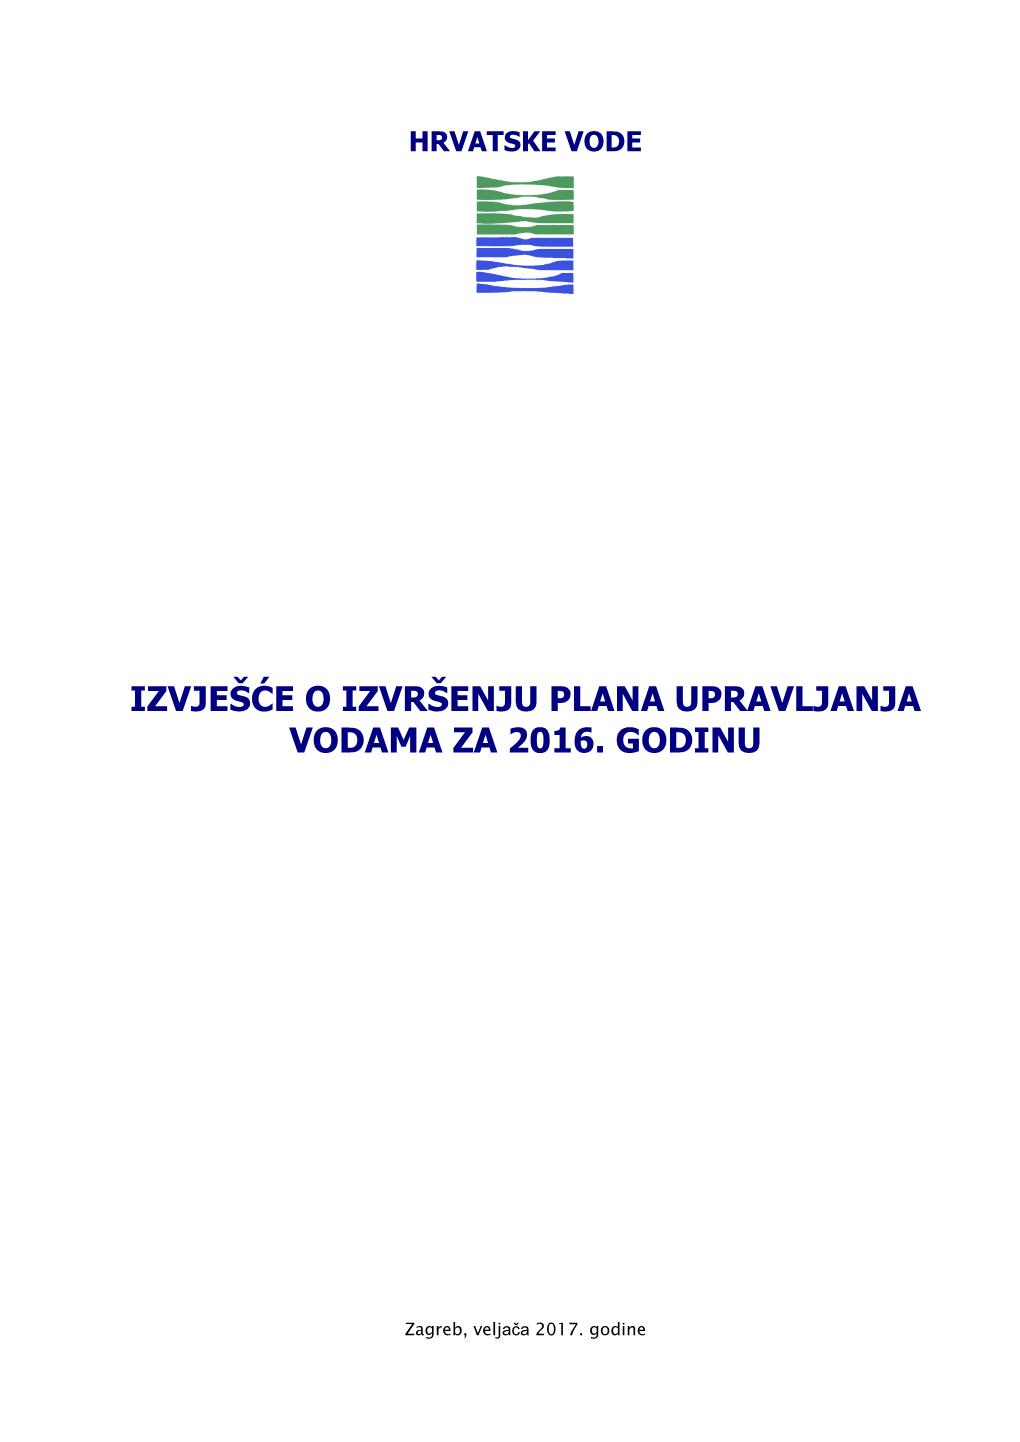 Izvješće O Izvršenju Plana Upravljanja Vodama Za 2016